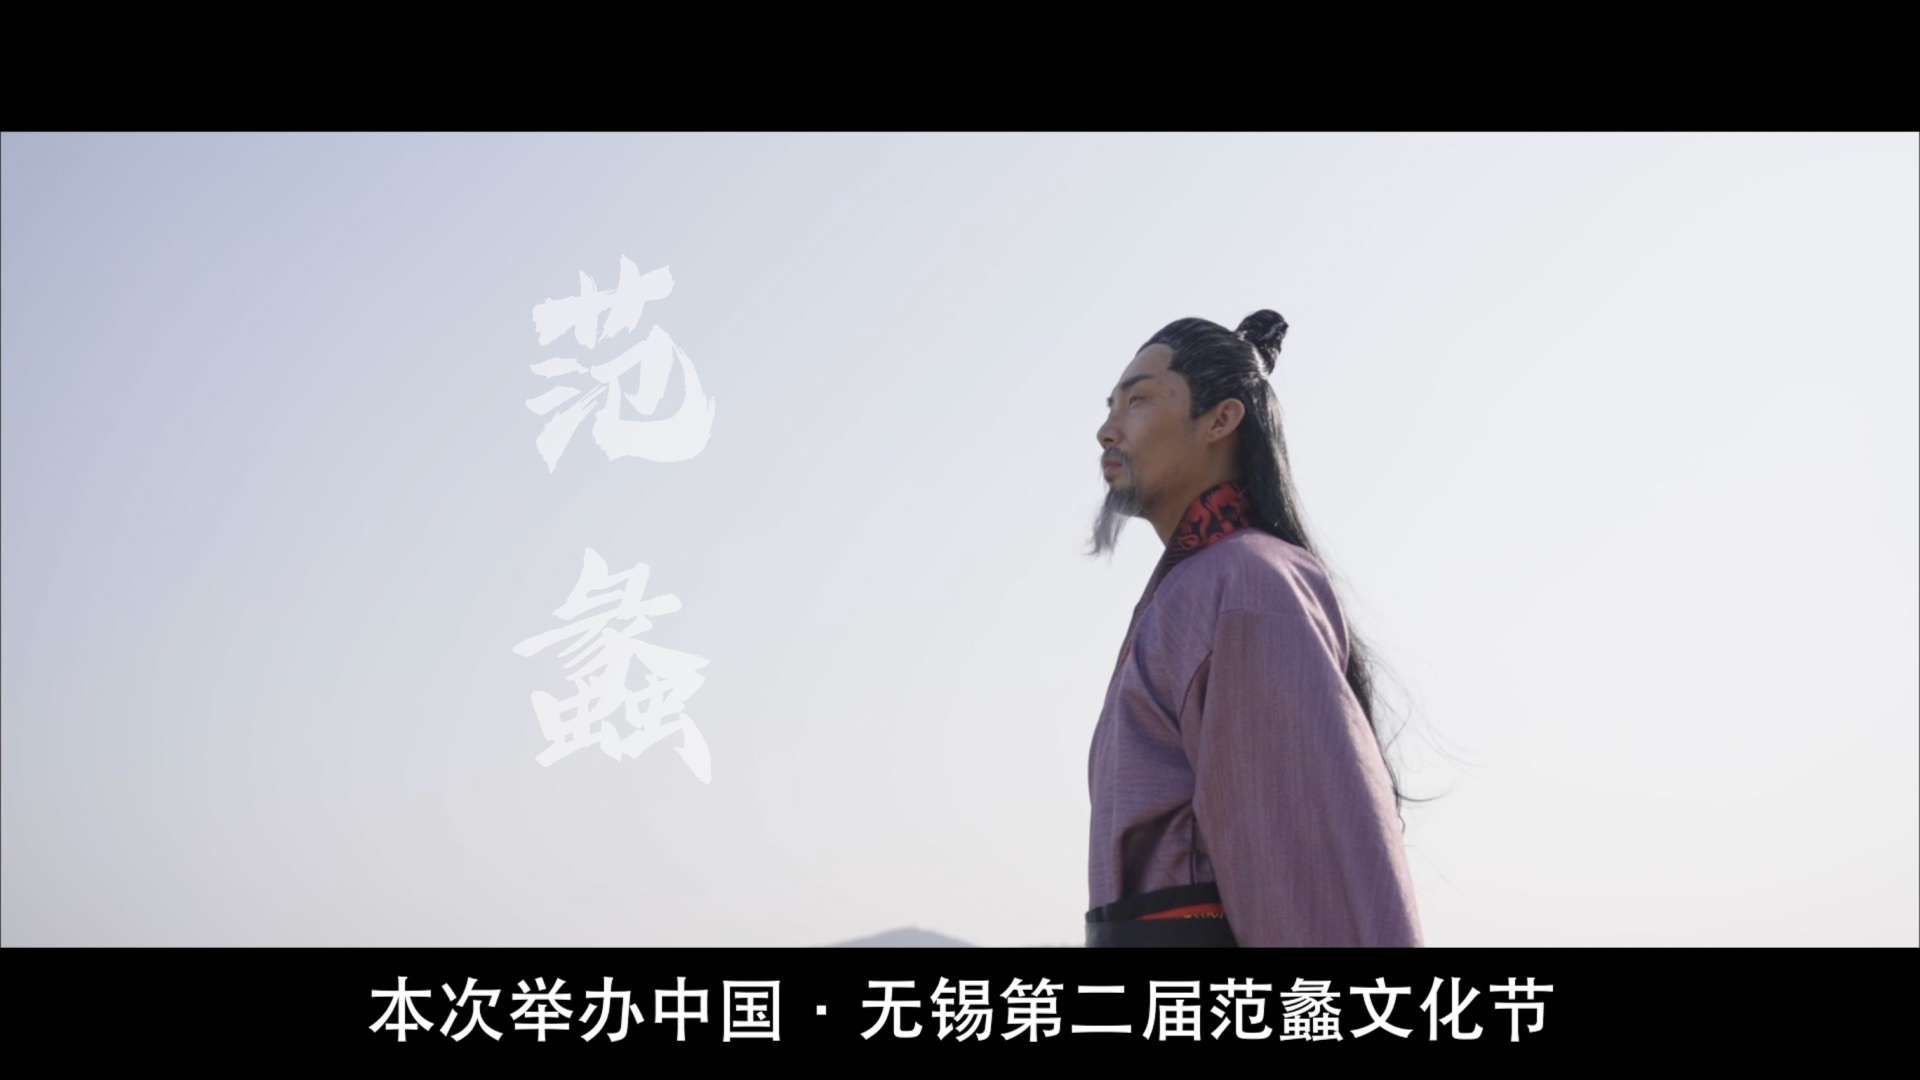 中国无锡第二届范蠡文化节宣传短片